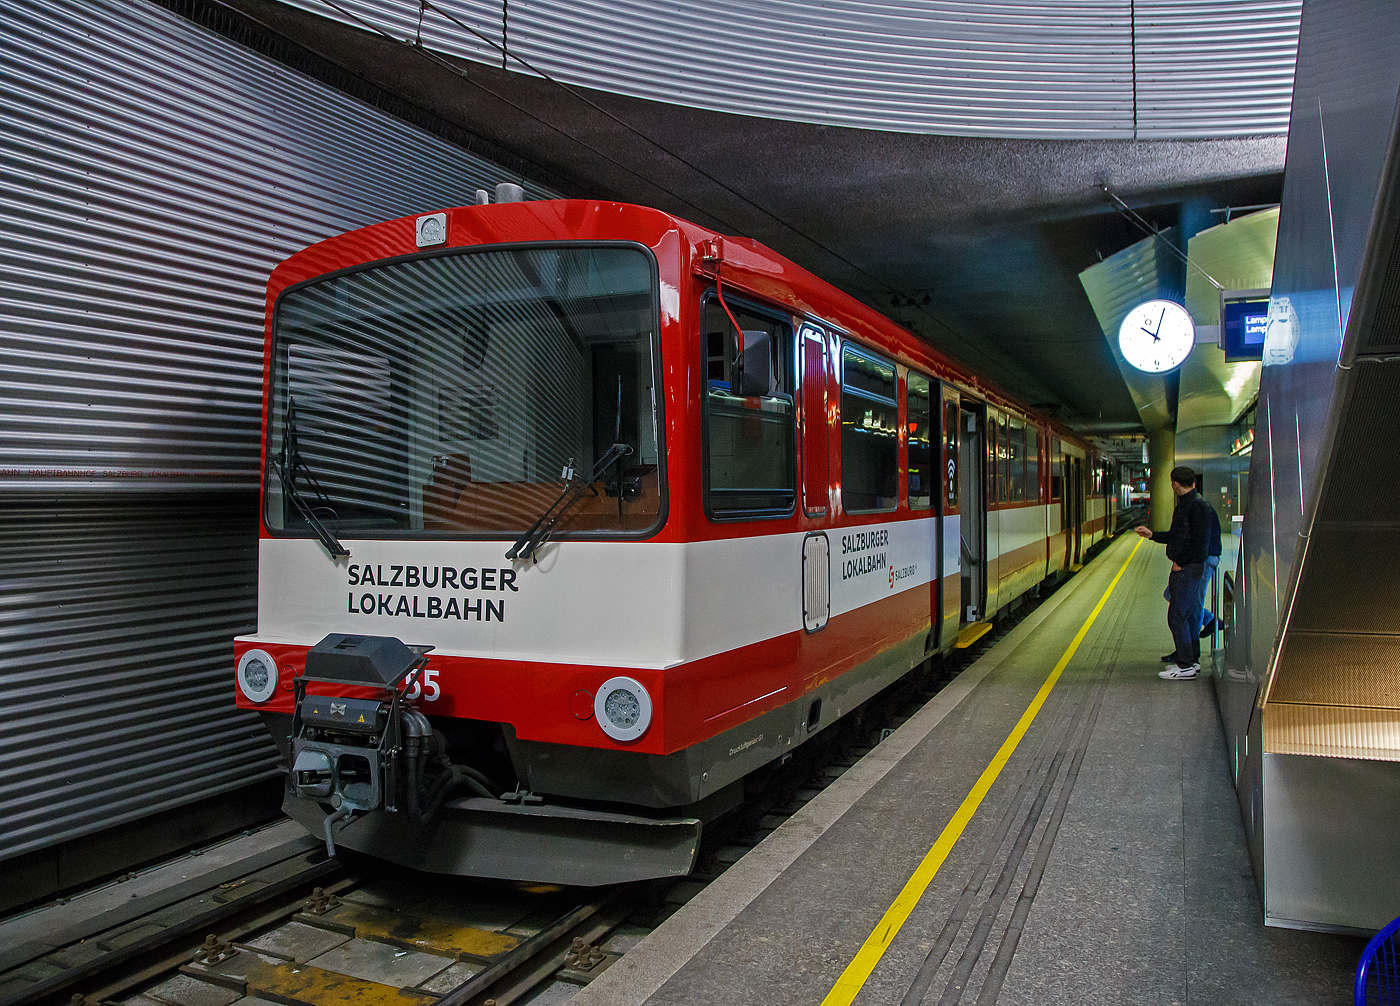 Der ET 55 „Land Salzburg“ (Baujahr 2001) der SLB - Salzburger Lokalbahn steht am 12.09.2022 im Hbf Salzburg (tief). 

Der Triebwagen wurde 2001 von Siemens (ex SGP - Simmering-Graz-Pauker AG) gebaut, der elektrische Teil ist von Bombardier (ex AEG).

Seit 1983 bestimmen die bis 2002 beschafften Stadtbahnwagen der Typenreihe ET40 (ET40HF und ET40NF) das Bild der Salzburger Lokalbahn. Diese waren nach über 30 Jahren die ersten Neufahrzeuge und setzten ein Zeichen für Aufschwung des Nahverkehrs im nördlichen Flachgau und im angrenzenden Innviertel.

Nach Abwägung mehrerer Projekte entschied sich die SLB in Anlehnung an deutsche Stadtbahnwagen sechsachsige Gelenktriebwagen zu beschaffen. So geschah es, dass 1983 der erste Triebwagen einer zunächst fünf Fahrzeuge umfassenden Lieferserie (ET41-ET45) in Salzburg eintraf und sich sofort großer Beliebtheit erfreute. Das Konzept dieser Triebwagen bewährte sich, sodass ab 1988 eine weitere Serie (ET46-ET50) in Betrieb genommen wurde. Diese Triebwagen wiesen einige Modifikationen auf, die sich jedoch äußerlich kaum bemerkbar machen.

Infolge der stetig wachsenden Fahrgastzahlen und um die letzten Altbautriebwagen aus dem Planbetrieb nehmen zu können, wurden 1992 vier Triebwagen (ET51-ET54) und 2001/02 weitere vier (ET55-ET58) ausgeliefert. Die Triebwagen ET50 bis ET58 wurden von 2012 bis 2014 mit Niederflur-Mittelteilen zu achtachsigen Fahrzeugen umgebaut. Als erstes Fahrzeug wurde ET54 im Juli 2012 nach dem Umbau durch die Firma INEKON in Ostrava (CZ) in Salzburg übernommen. 

Die beiden Wagenkästen eines Triebwagens stützen sich stirnseitig über Schraubenfedern auf die Drehgestelle ab. Diese sind als Triebdrehgestelle ausgeführt, welche je einen Gleichstrommotor aufnehmen. Die Kraftübertragung erfolgt mittels starrer Wellen und Achsgetrieben auf beide Achsen eines Drehgestells. Jede der acht Achsen ist mittels Maggy-Federn mit dem Drehgestell verbunden. Jede Achse der Triebdrehgestelle wird mit Federspeicherbremsen gebremst. Als primäre Betriebsbremse dient eine elektrische Bremse, als Zusatzbremse dienen Magnetscheibenbremsen an jedem Drehgestell. Die Laufdrehgestelle werden mit Druckluftbremsen gebremst. Durch entsprechende elektronische Ansteuerung können die Triebwagen in Vielfachsteuerung (max. drei Fahrzeuge) eingesetzt werden.

Mechanischer Teil
Der Wagenkasten ist als selbsttragende Stahlkonstruktion ausgeführt welche sich auf den beiden Motordrehgestellen an den Fahrzeugenden sowie auf Jakobs-Drehgestelle abstützt. Der Fahrmotor ist den Drehgestellen als Längsmotor eingebaut, die Kraftübertragung erfolgt über Winkelgetriebe (Tandemantrieb). Die Primärfederung wurde mittels Megi-Federn ausgeführt, zwischen Drehgestell und Wagenkasten kommen Schraubenfedern in Verbindung mit hydraulischen Stoßdämpfern zum Einsatz. Die Wagen 50–58 wurden in den Jahren 2012–2014 um ein Niederflur-Mittelteil erweitert und ein zusätzliches Jakobs-Drehgestell erweitert. Des Weiteren wurden in den Endwagen Sitze und Bodenbeläge getauscht sowie die Drehfalttüren durch Schwenkschiebetüren der Firma IFE ersetzt. Das Umbauprogramm wurde 2019 mit dem ET46 abgeschlossen. Somit sind von den 18 Triebwagen insgesamt 13 mit Mittelteil (ET46-ET58, Bezeichnung ET40NF) ausgestattet und 5 Fahrzeuge (ET41-ET45) noch wie ursprünglich 2-teilig. 

Elektrischer Teil
Die Fahrmotoren sind als vierpolige, kompensierte Vollspannungs-Reihenschlussmotoren mit 300 kW Nennleistung ausgeführt. Jeder Motor wird von einem eigenen Thyristor-Gleichstromsteller (Chopper) angesteuert. Durch die Verwendung von Gleichstromstellern ist es möglich, Bremsenergie in die Fahrleitung zurück zu speisen. Kann die Bremsenergie nicht aufgenommen werden, wird diese durch Bremswiderstände in Wärme umgewandelt. 

TECHNISCHE DATEN:
Gebaute Anzahl: 9 (ET 46 bis ET 58)
Spurweite:  1.435 mm (Normalspur)
Achsfolge:  B‘2‘2‘B‘
Länge über Puffer: 38.800 mm
Höhe mit Dachaufbauten: 3.720 mm
Breite: 2.674 mm
Fußbodenhöhe über SOK: 984 mm, im Niederflur-Mittelteil 350 mm
Leergewicht: 62.700 kg
Drehzapfenabstand: 3 x 10.400 mm
Achsstand im Drehgestell: 1.900 mm
Raddurchmesser:  780 mm (neu) / 710 mm (abgenutzt)
Kleinster zulässiger Bogenradius:  80 m
Höchstgeschwindigkeit: 80 km/h
Sitzplätze: 104
Stehplätze: 158
Leistung Fahrmotoren:  2 x 300 kW 
Übersetzung: 1:5,625
Stundenleistung:  600 kW
Fahrdrahtspannung : 1.000 V DC (=)
Steuerung:  Chopper (Gleichstromsteller)
Stromabnehmer:  Halbscherenstromabnehmer
Zug- und Stoßvorrichtung: Scharfenbergkupplung
Bremsbauart: Elektrodynamische Nutzbremse, Federspeicher-, Magnetschienen- und Solenoidbremse

Die SLB ist eine Tochtergesellschaft der Salzburg AG für Energie, Verkehr und Telekommunikation. Die Bahn nahm 1896 ihren Betrieb auf. Von 1907-1940 betrieb die Salzburger Eisenbahn und Tramway Gesellschaft (SETG) die Bahn, die in der Stadt Salzburg auch ein Straßenbahnnetz betrieb.

Quelle: SLB